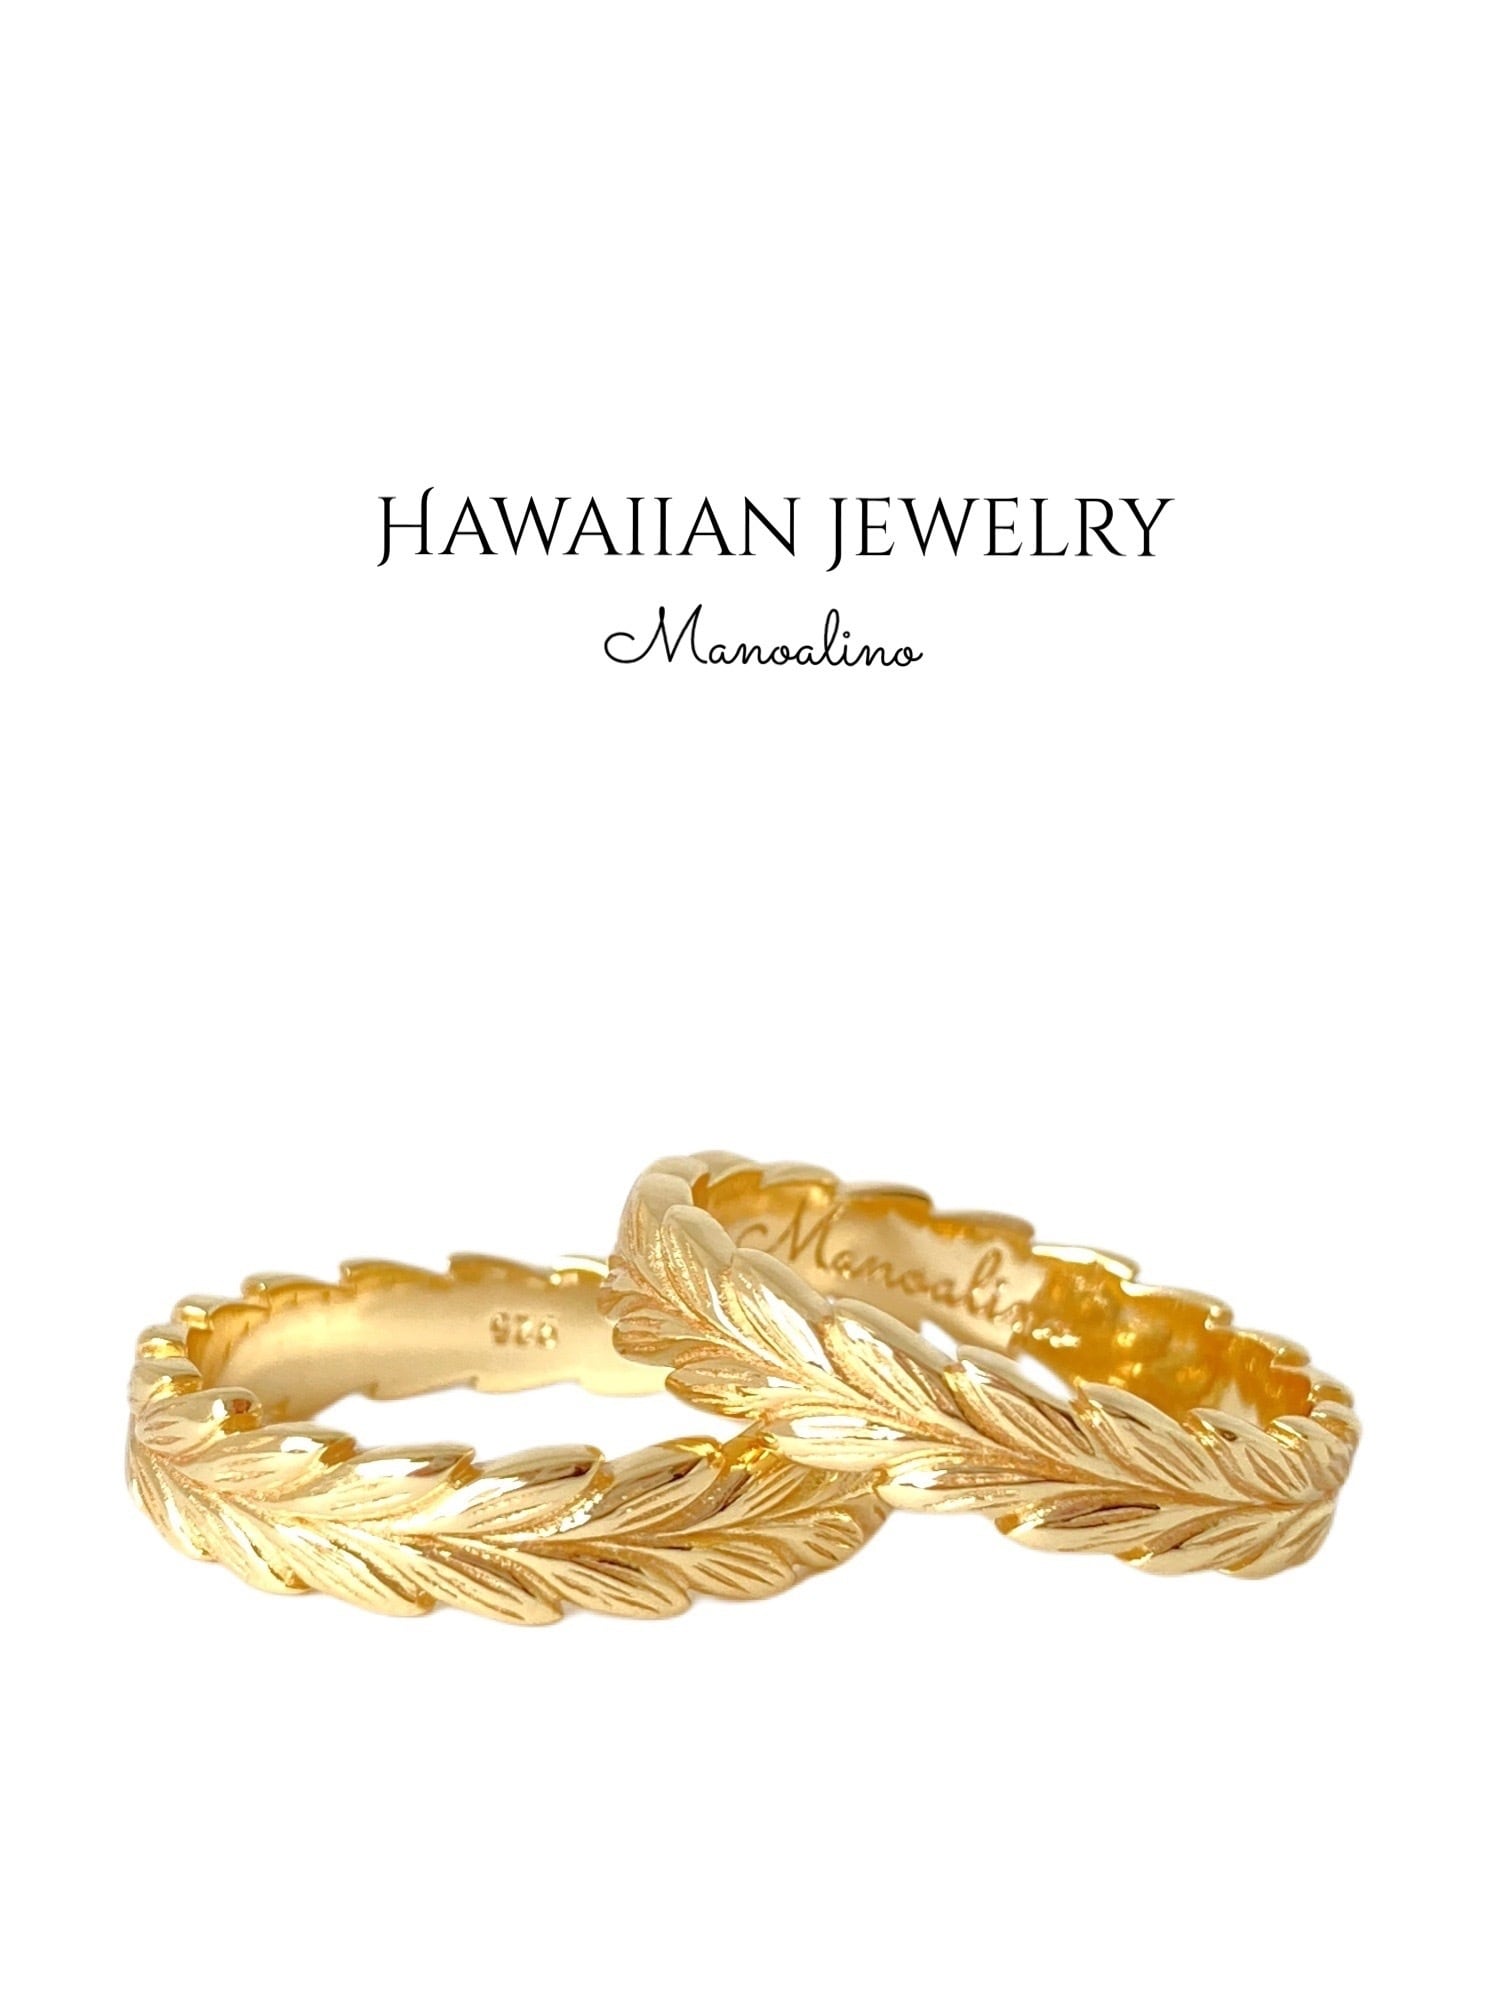 Maile 4mm ringHawaiianjewelry(4mm幅ハワイアンジュエリー マイレリング) | Manoalino  【Hawaiianjewelry・Hawaiianaccessory&select】